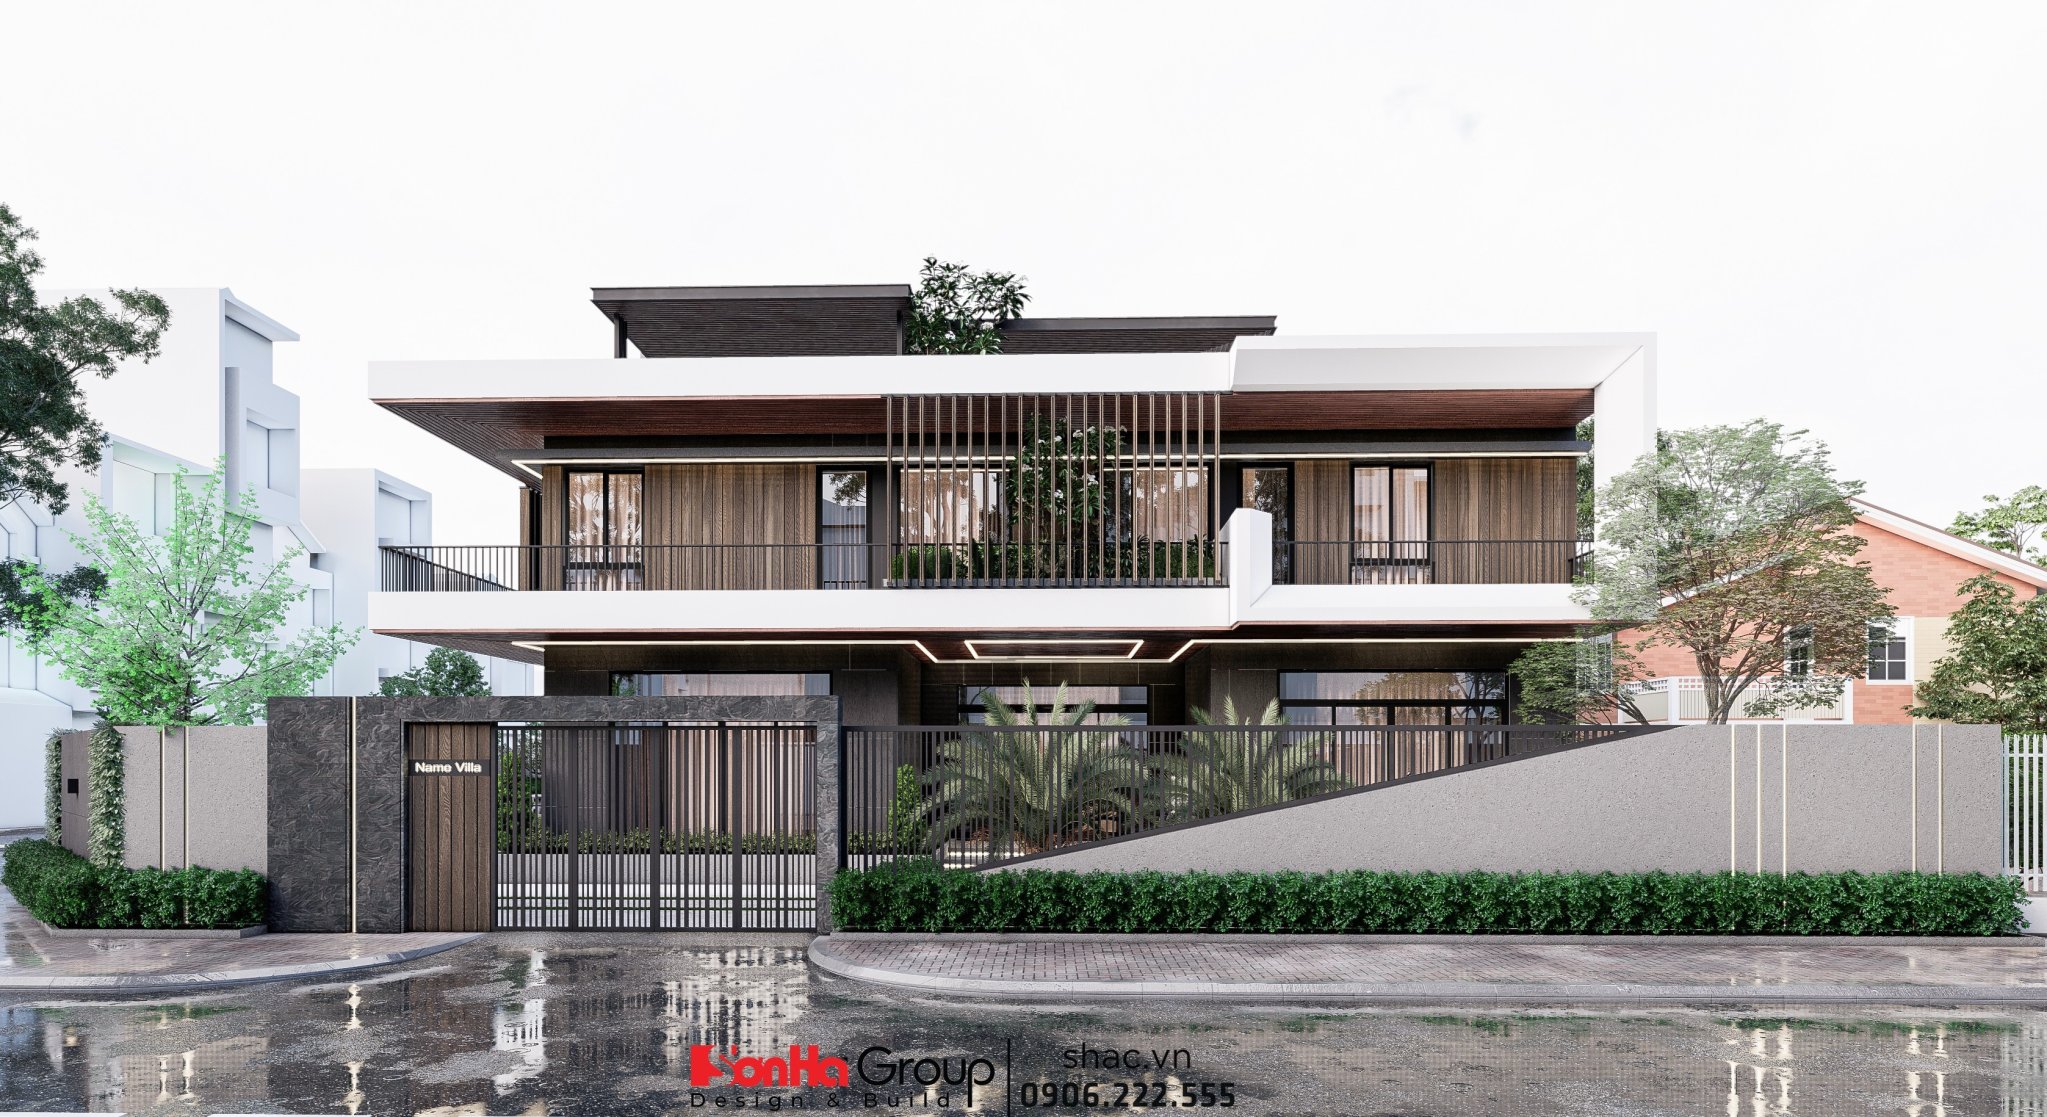 Nhà thông minh Quảng Ninh - Bkav SmartHome tư vấn giải pháp Villa anh Đạo - Quảng Ninh